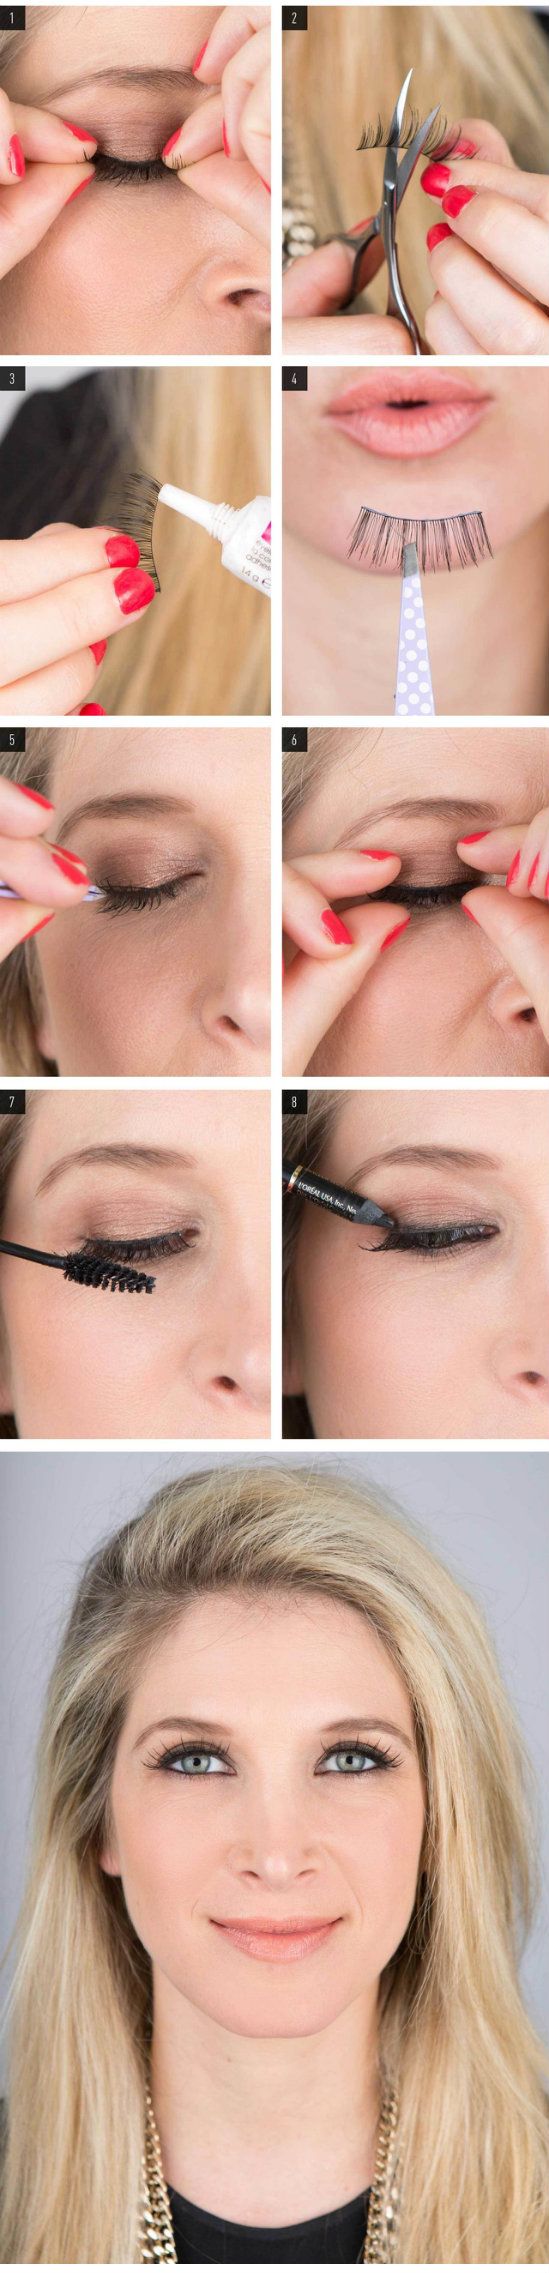 Makeup How To